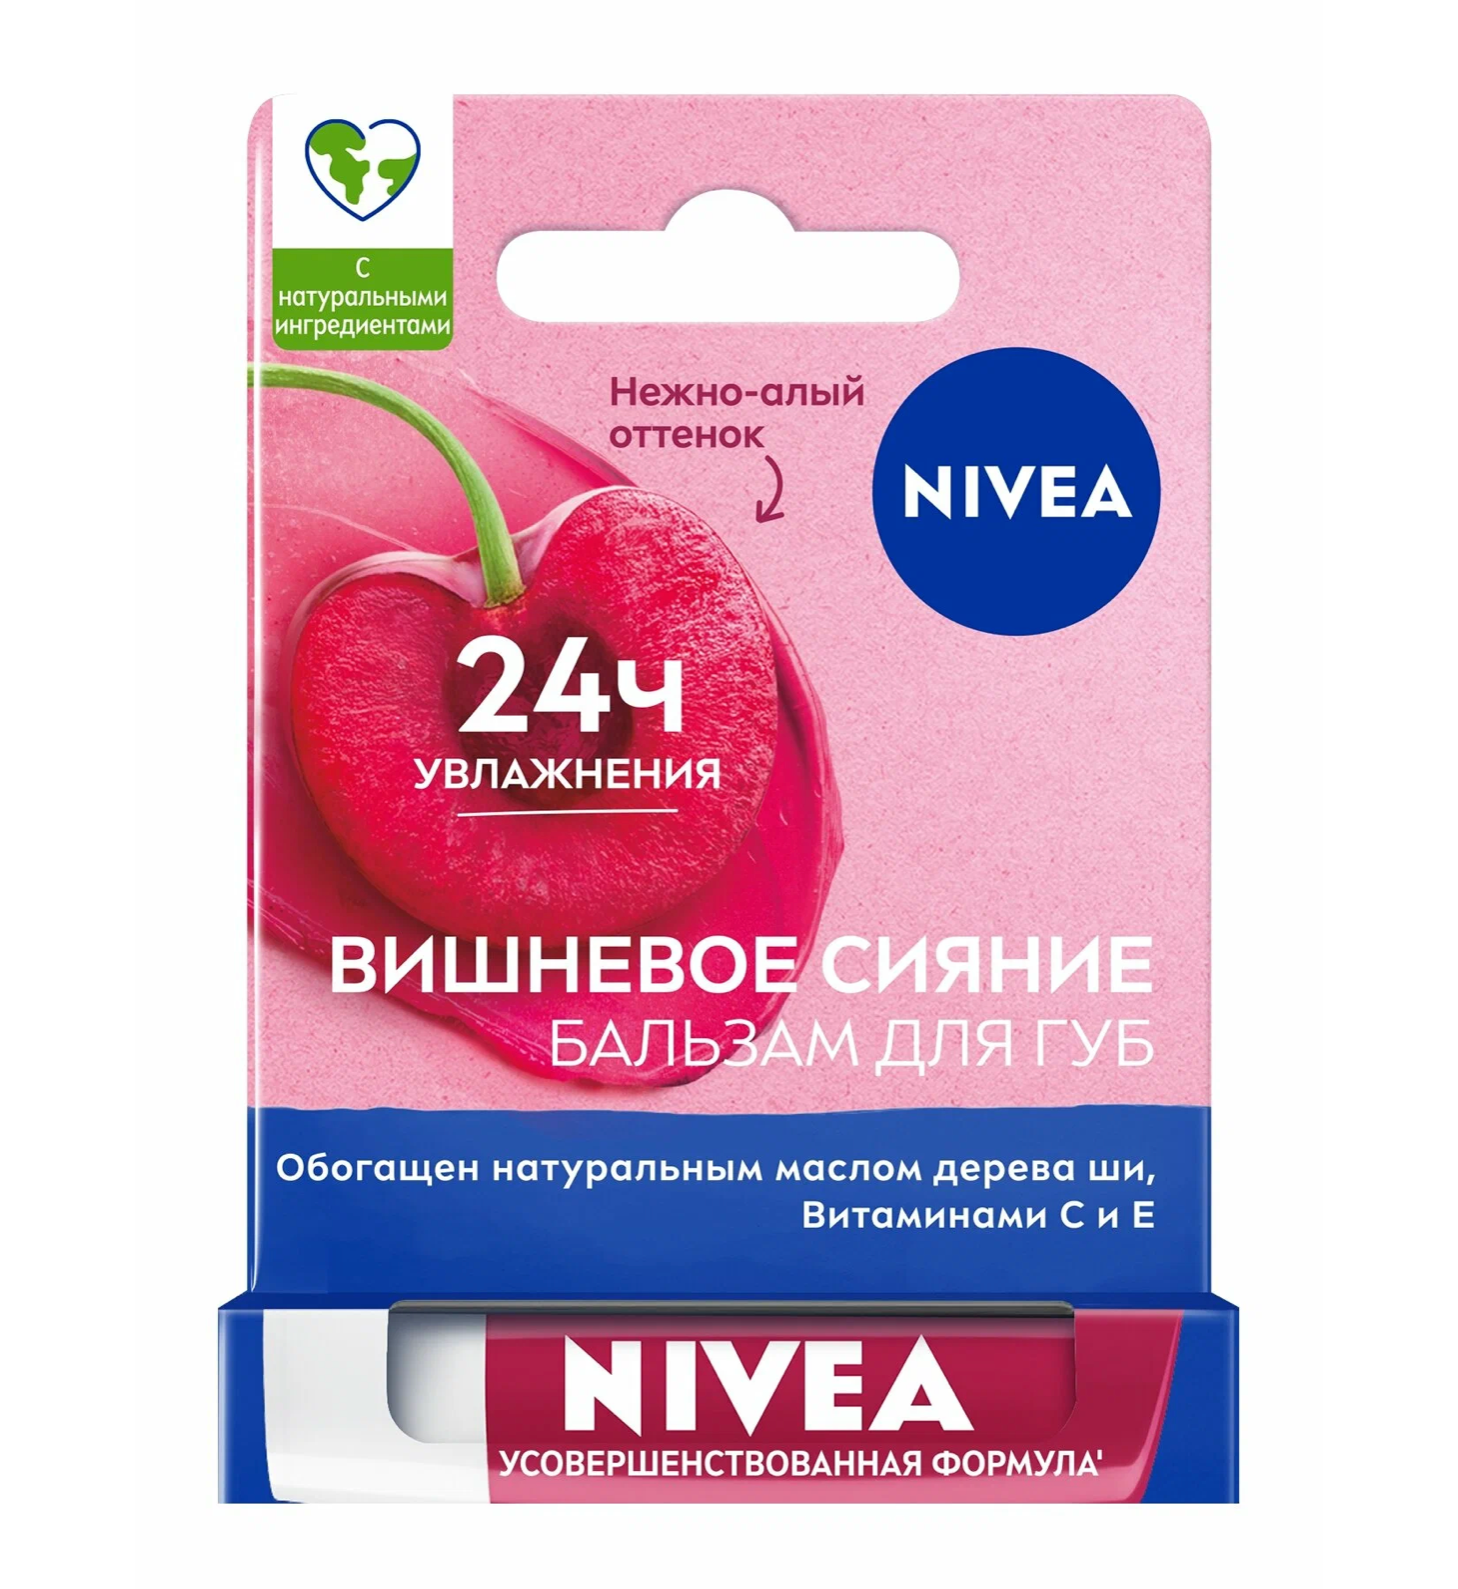 Нивея / Nivea - Бальзам для губ Вишневое сияние 24ч увлажнения 4,8 г